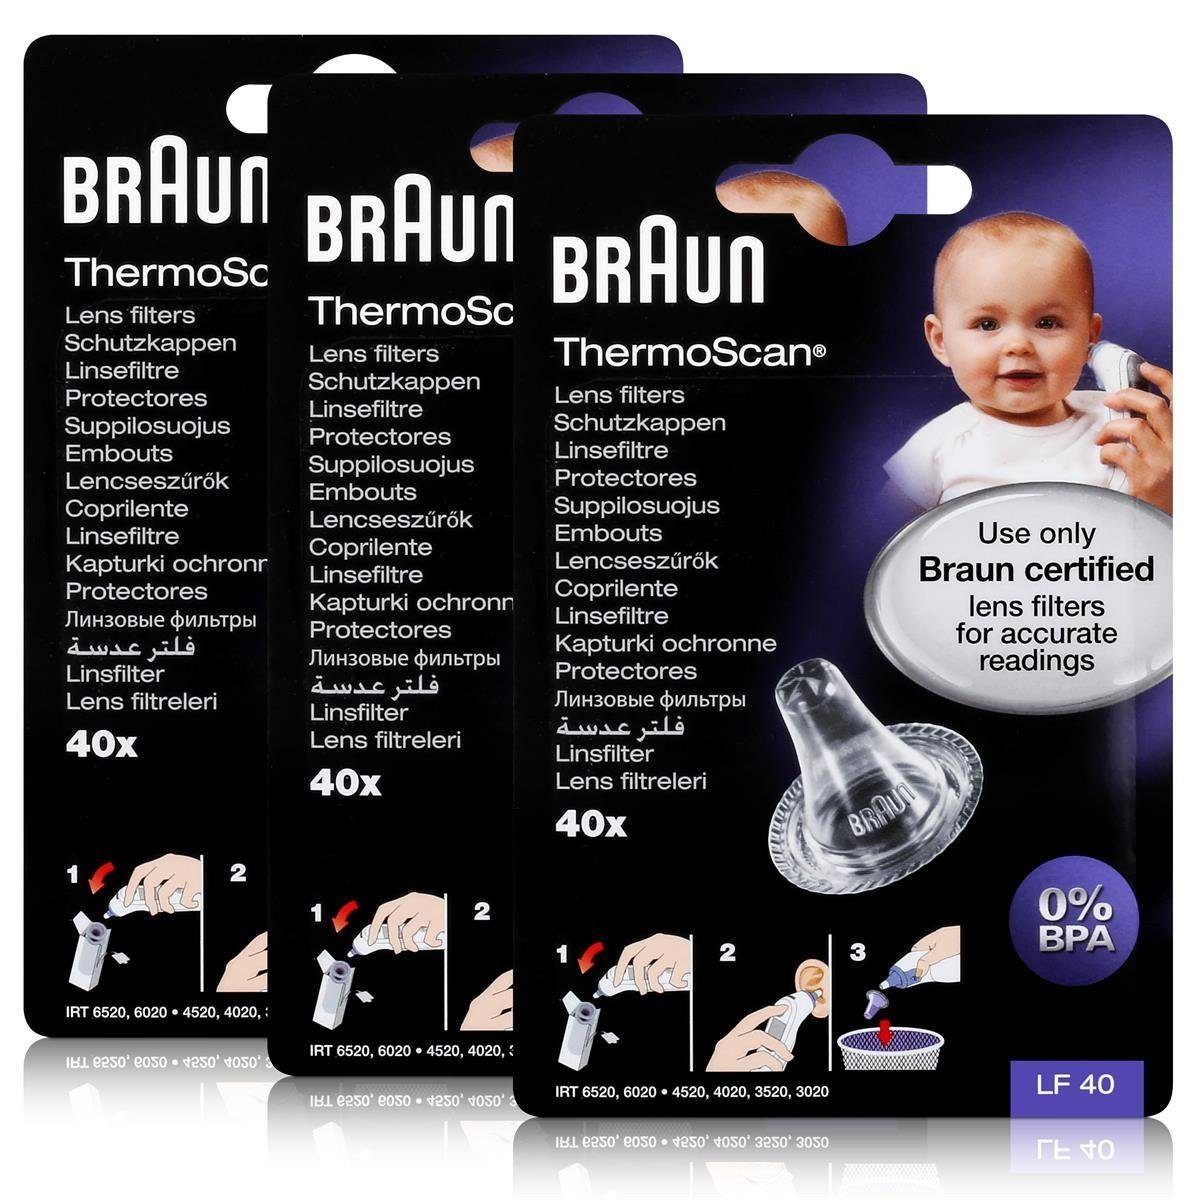 Braun Fieberthermometer Braun ThermoScan Schutzkappen 40 Stück - Für Thermoscan Thermometer (3